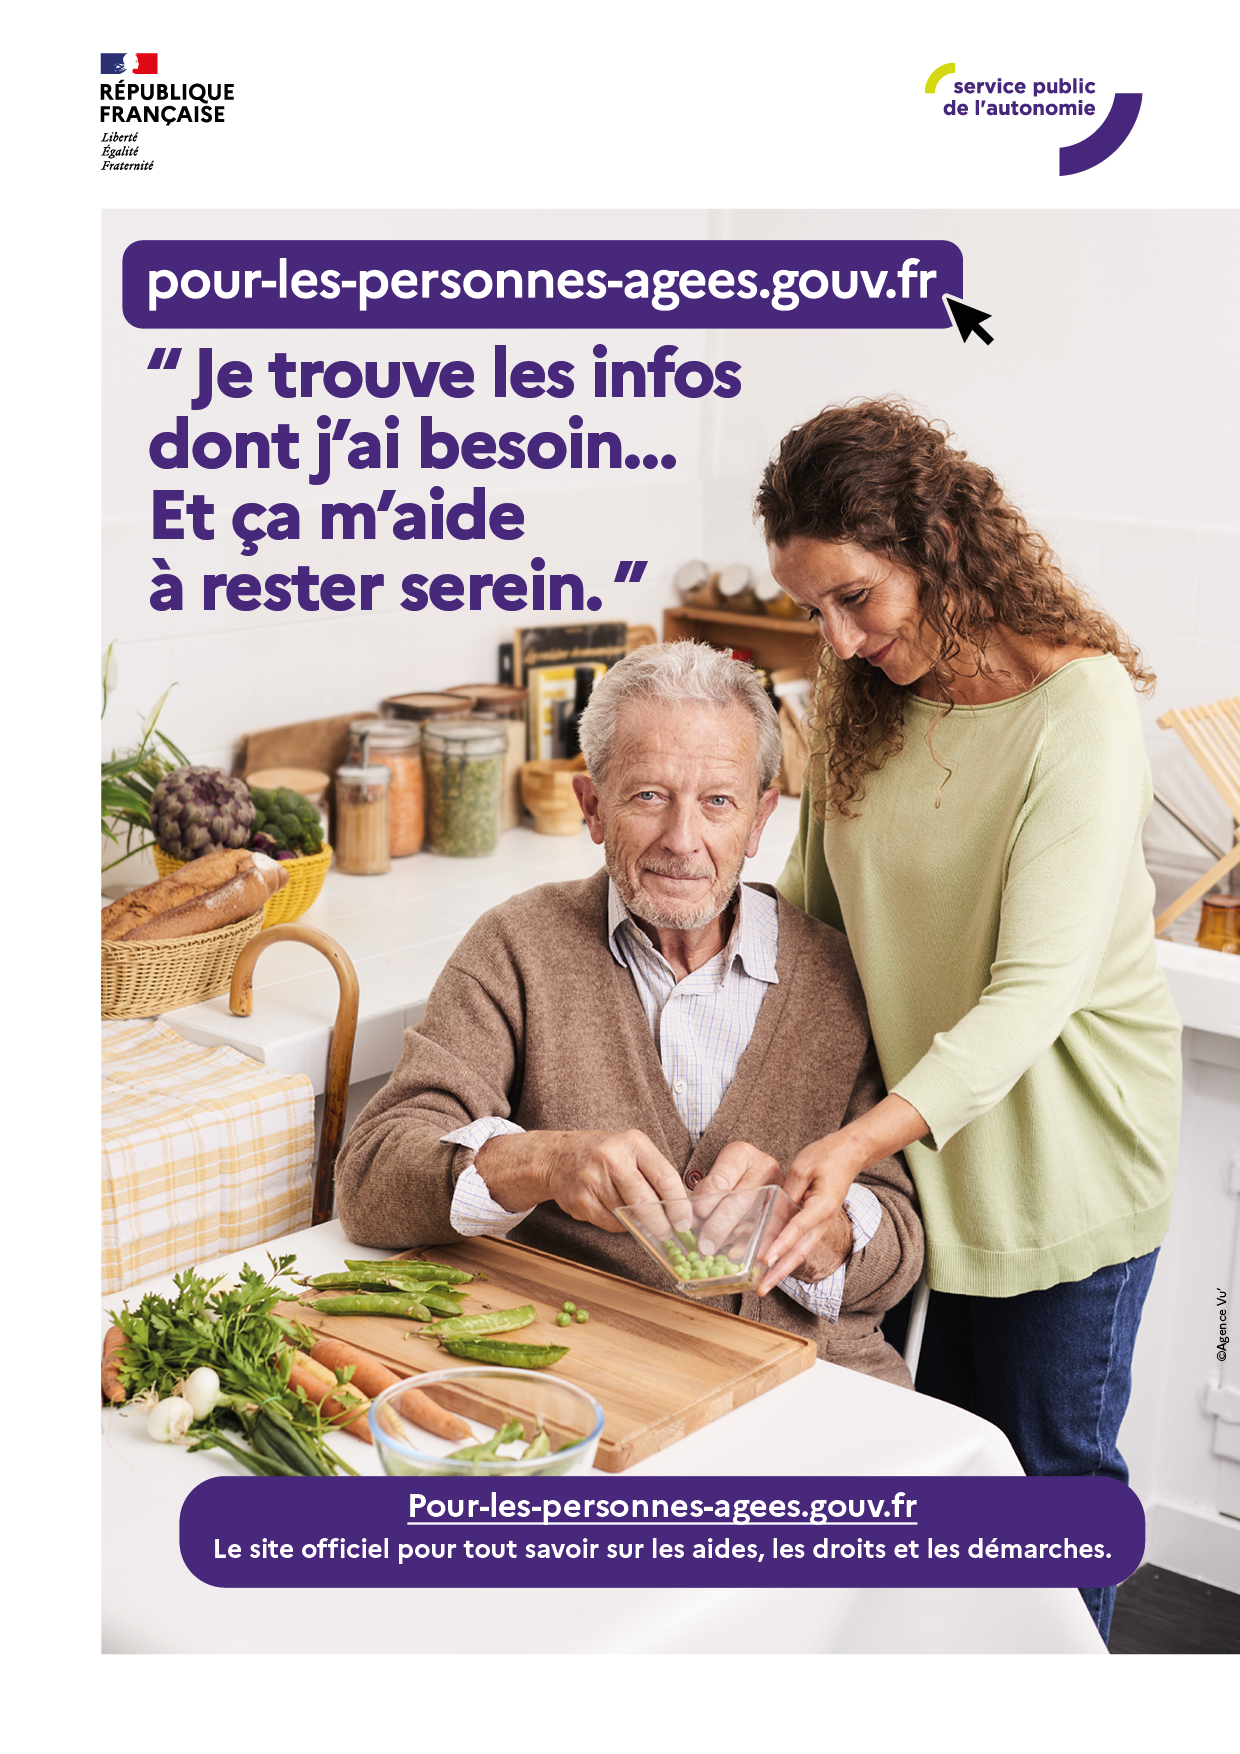 Personnes âgées, tout savoir sur les aides, droits, démarches : pour-les-personnes-agees.gouv.fr